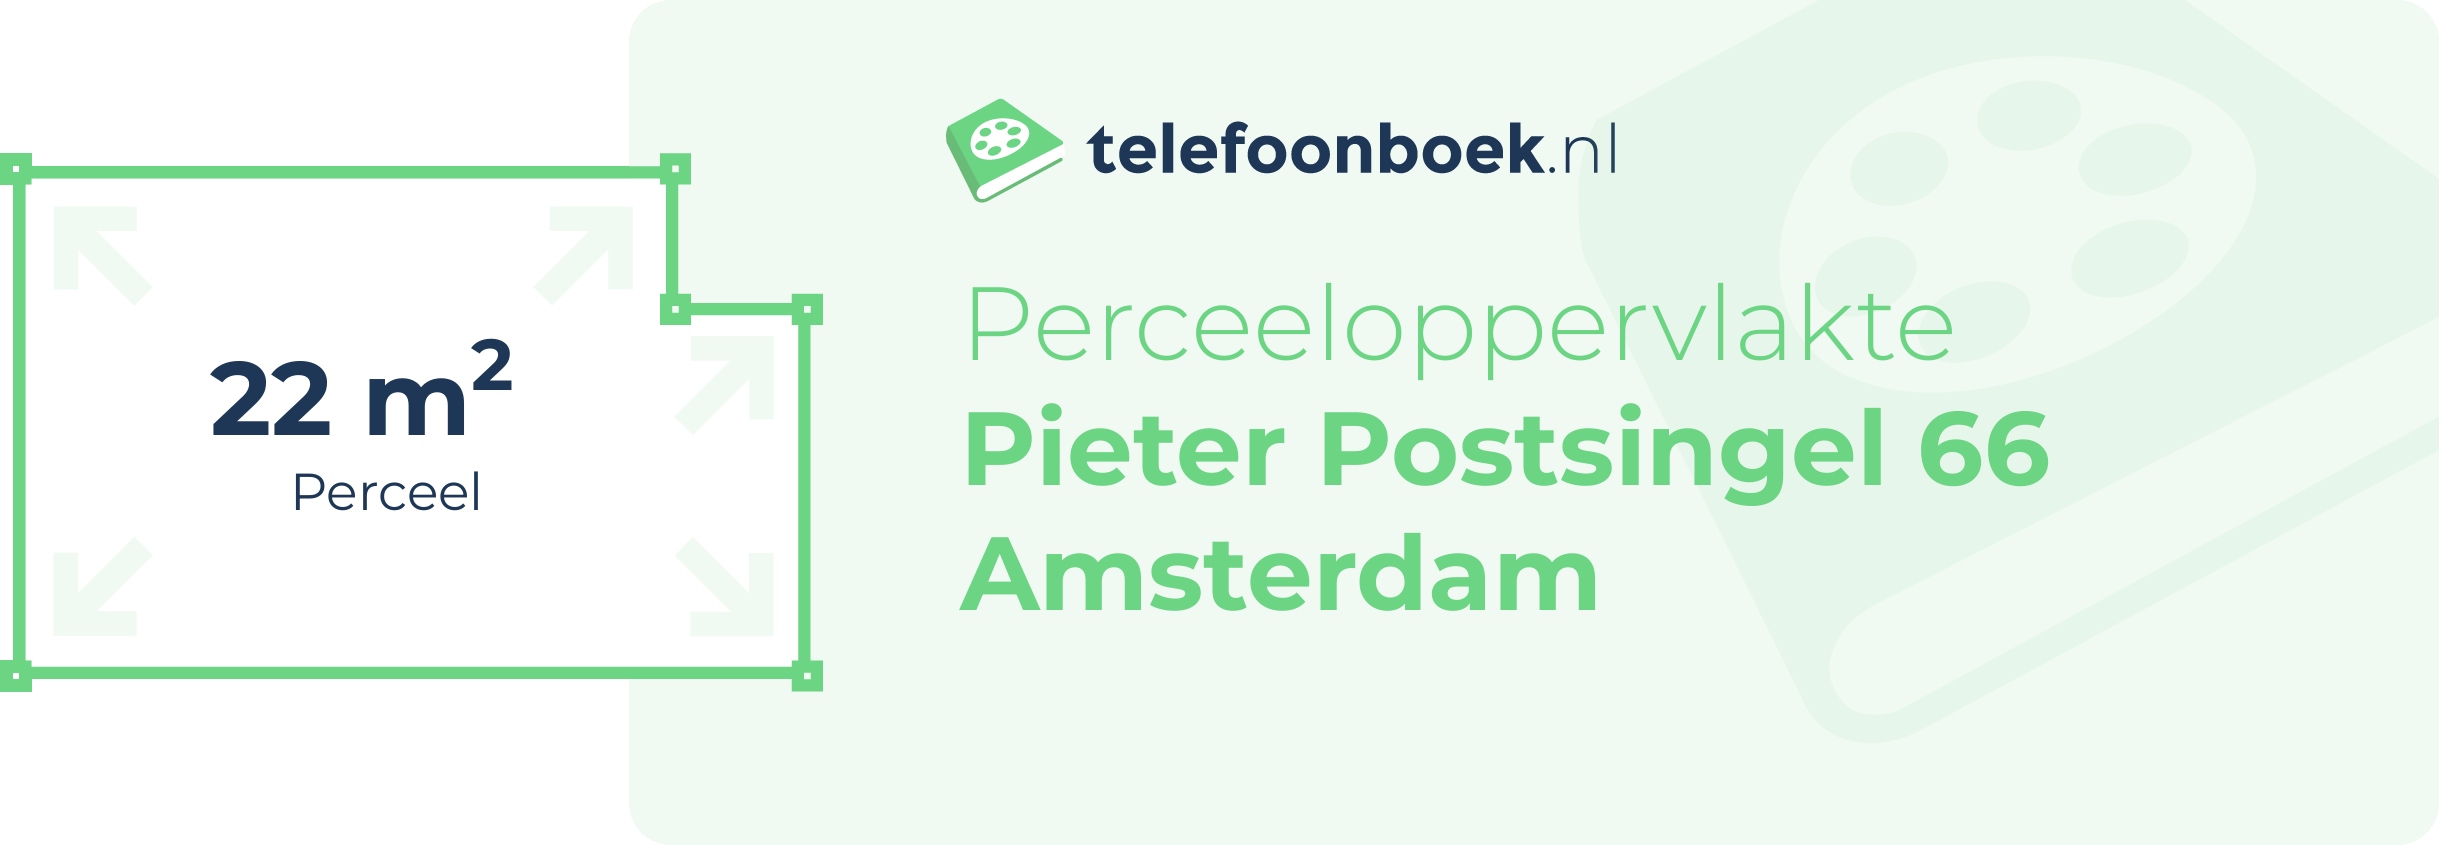 Perceeloppervlakte Pieter Postsingel 66 Amsterdam